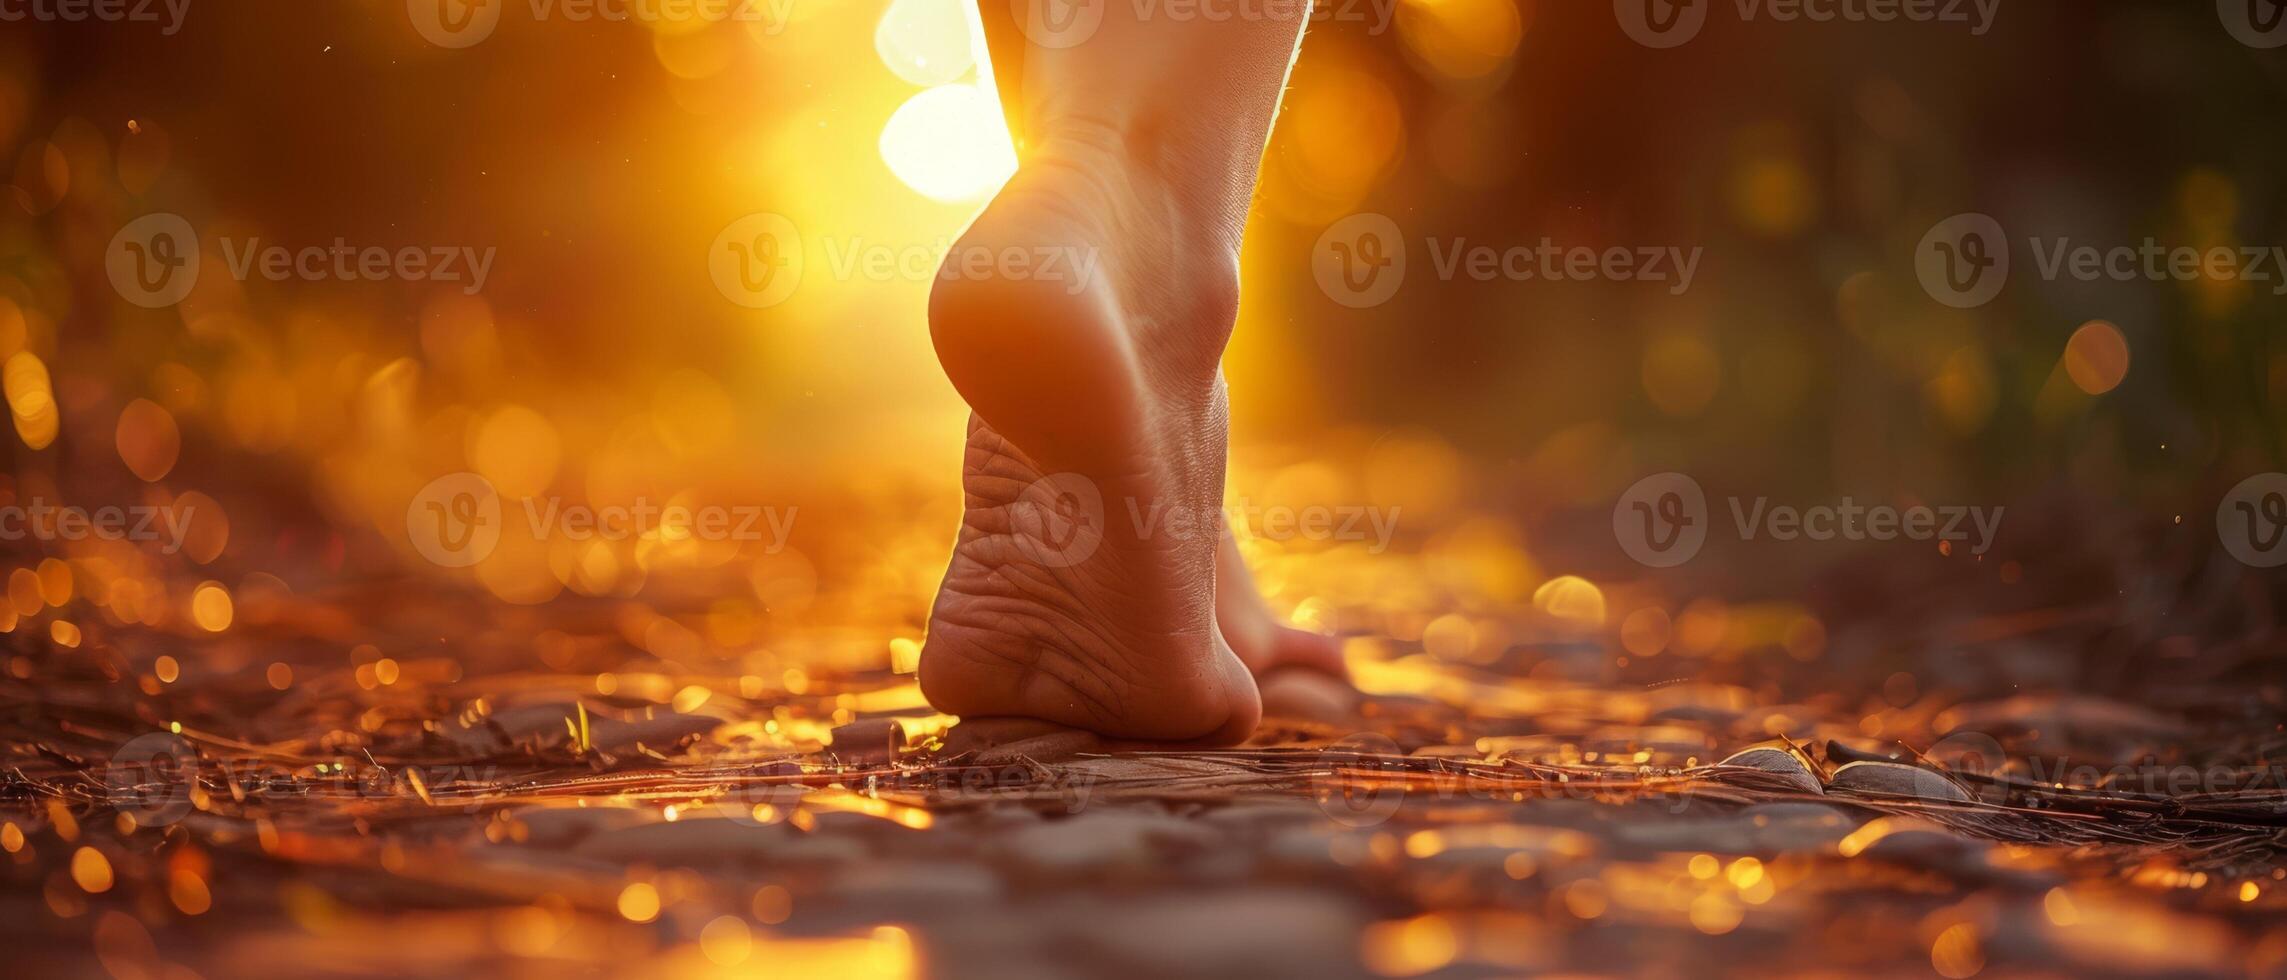 art de pieds en marchant sur le chemin de vie, concept de chaleur et relaxation, comme le du soleil des rayons éclairer le personne pied photo